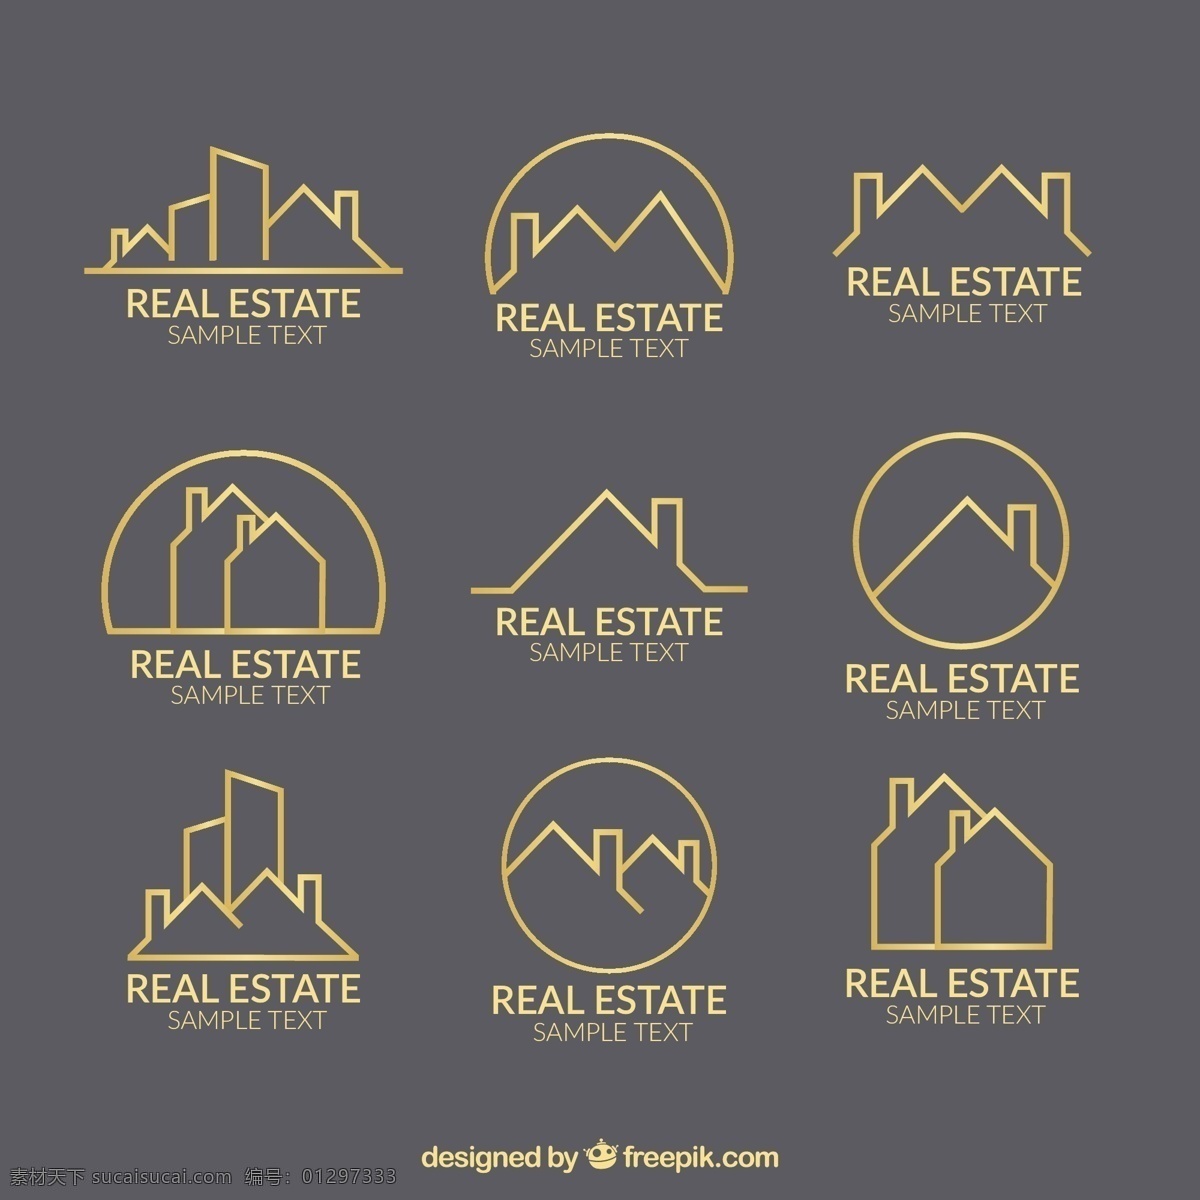 概述 真正 国家 标志 模板 标识 商业 销售 黄金 建筑 家庭 房地产 企业 投资 财产 结构 概念 概要 外部 灰色